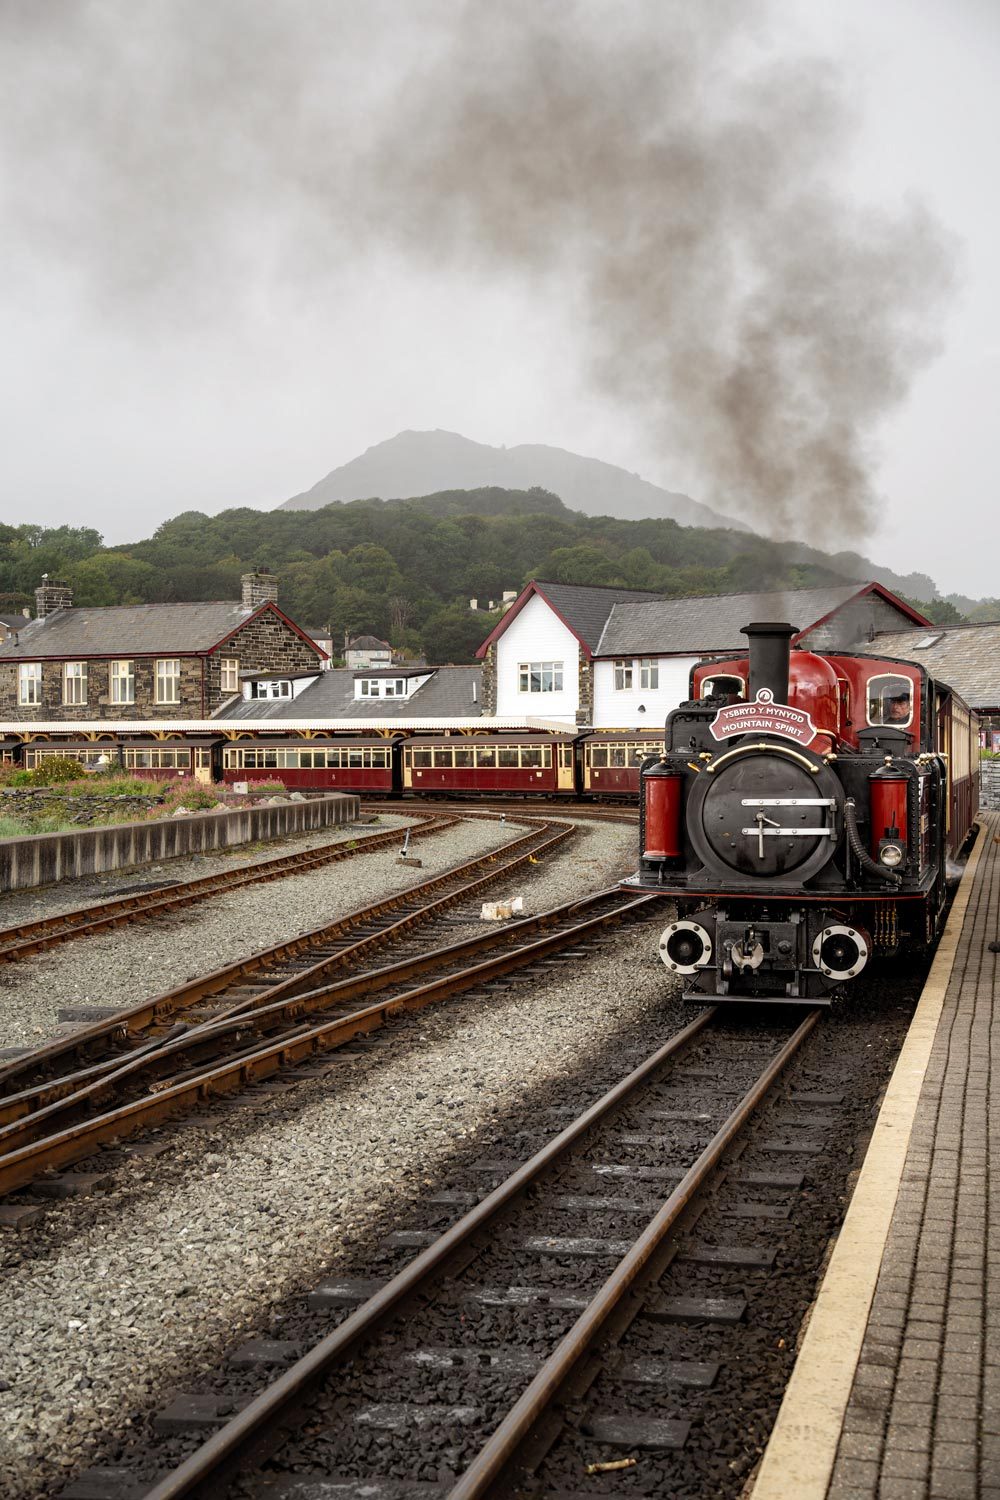 Porthmadog, Wales, Ffestiniog Railway